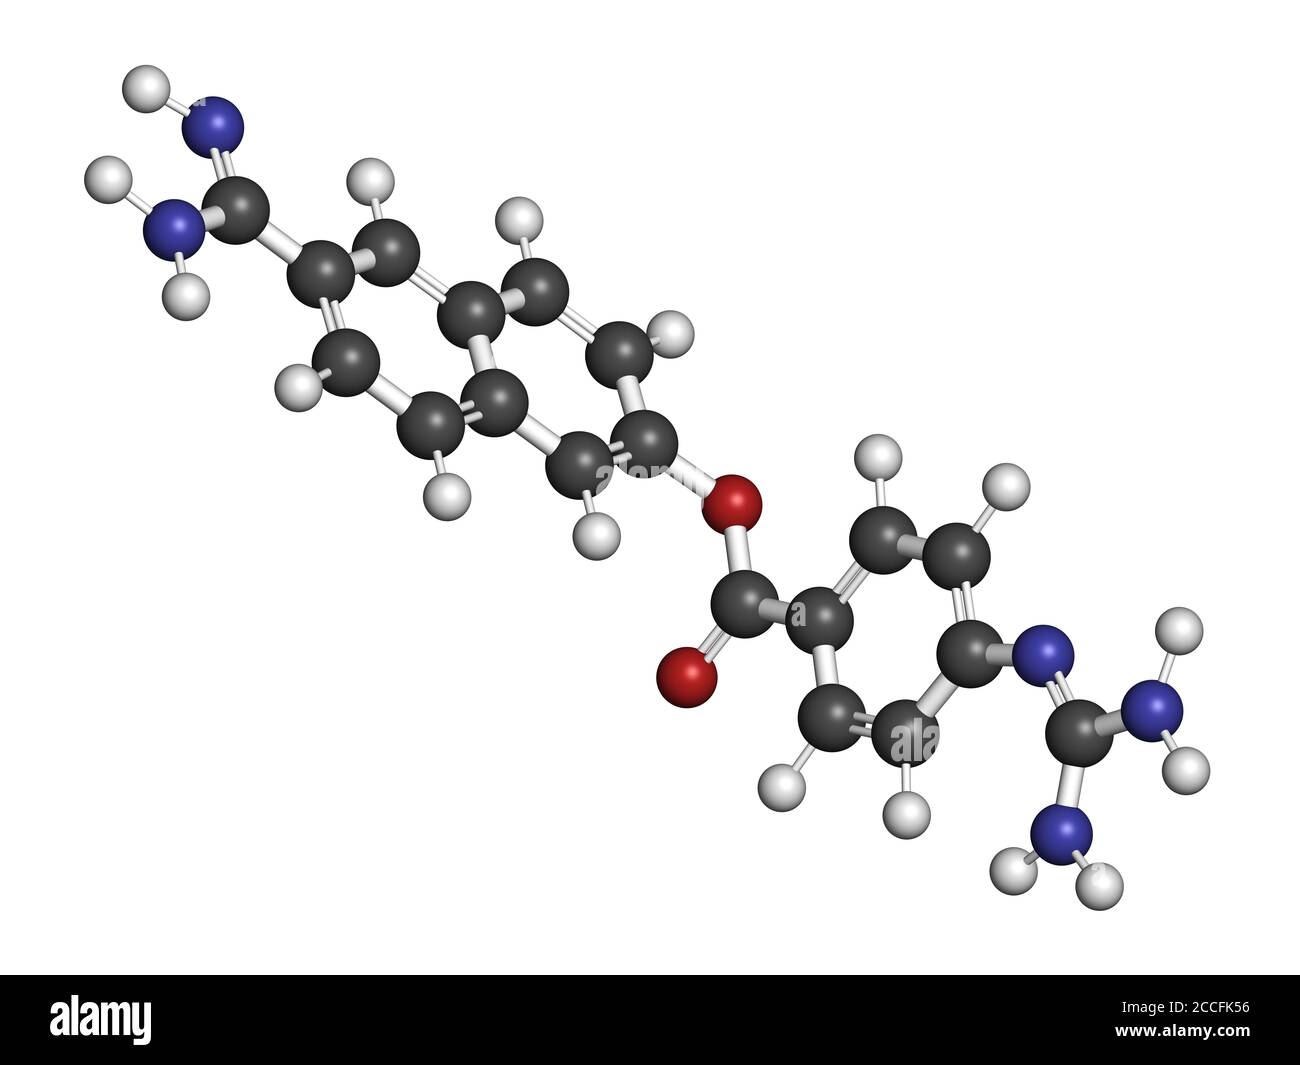 Molecola di farmaco di Nafamostat (inibitore della serina proteasi). Rendering 3D. Gli atomi sono rappresentati come sfere con codifica a colori convenzionale: Idrogeno (bianco), Foto Stock